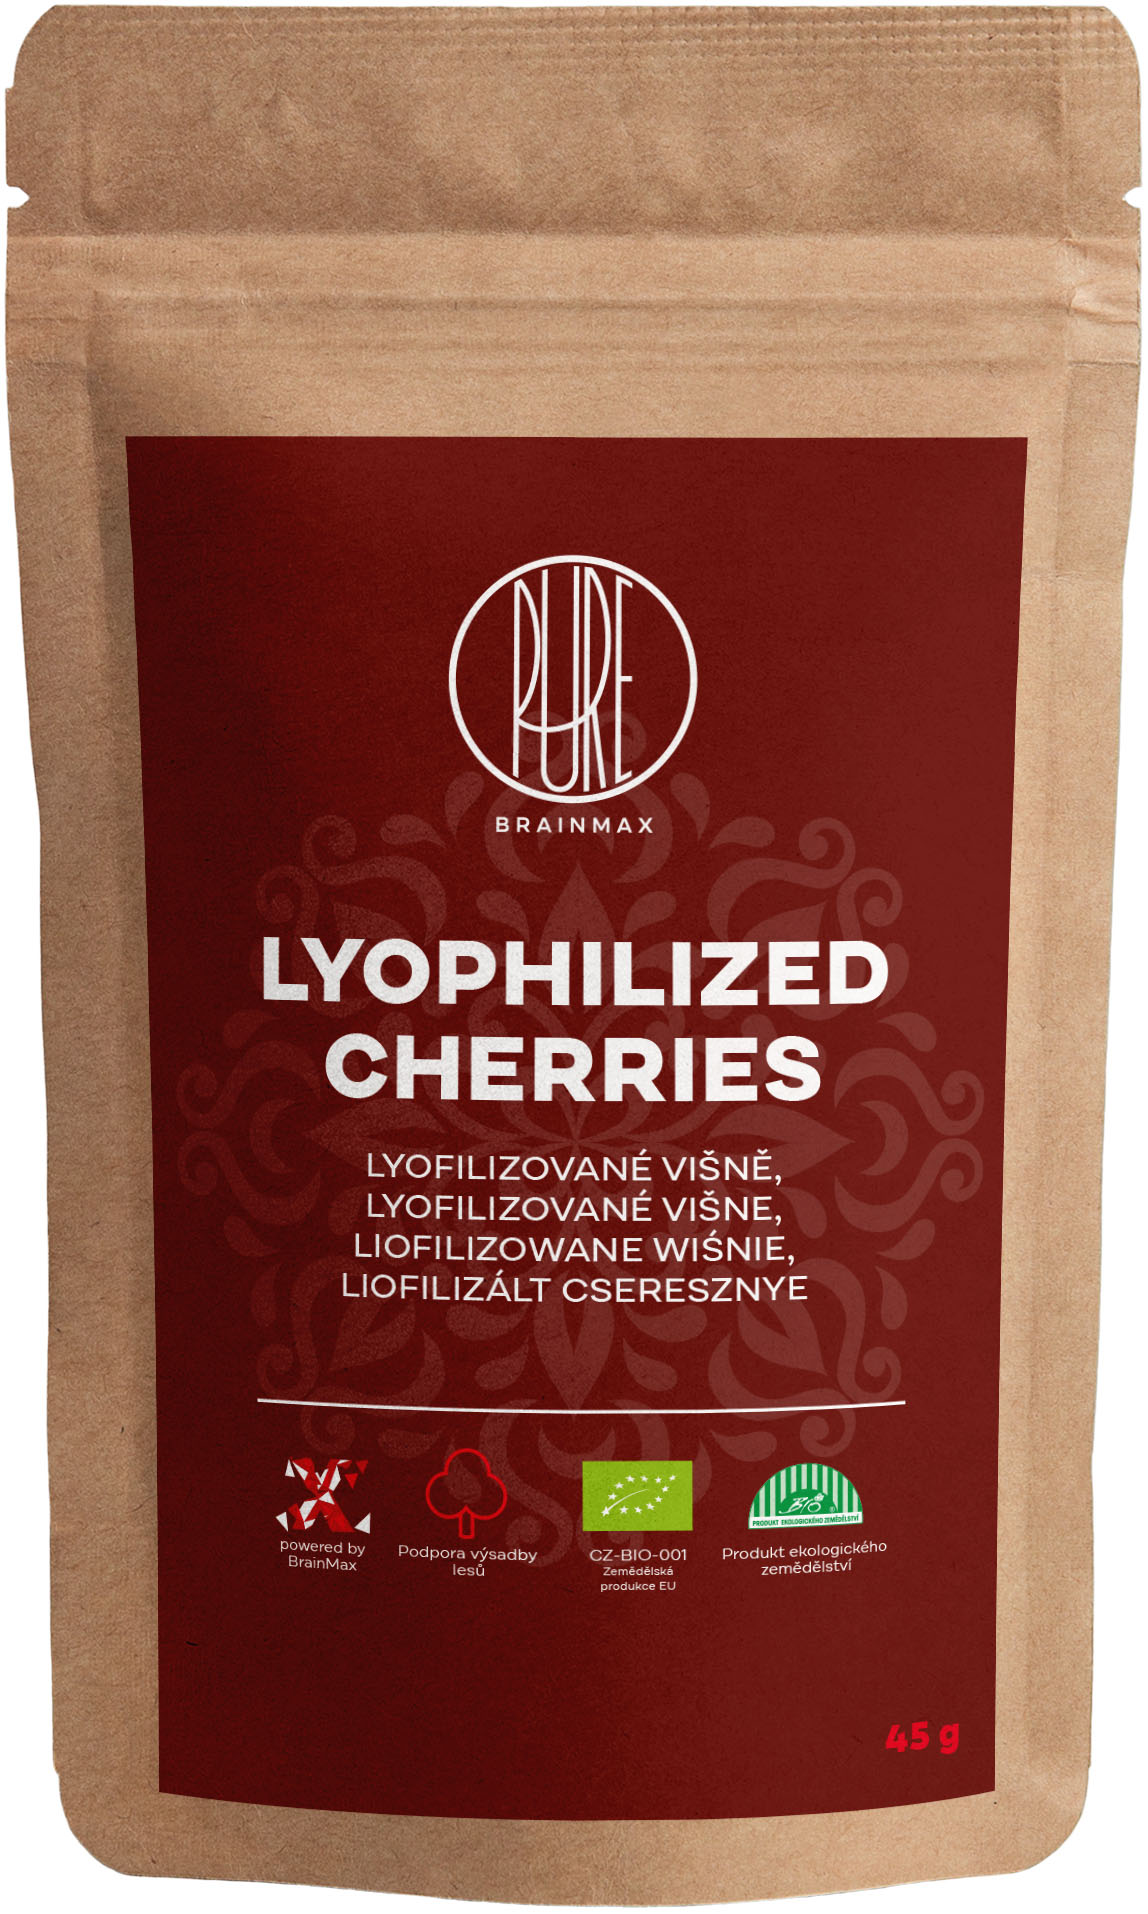 Levně BrainMax Pure Lyophilized Cherries, Lyofilizované višně, BIO, 45 g *CZ-BIO-001 certifikát